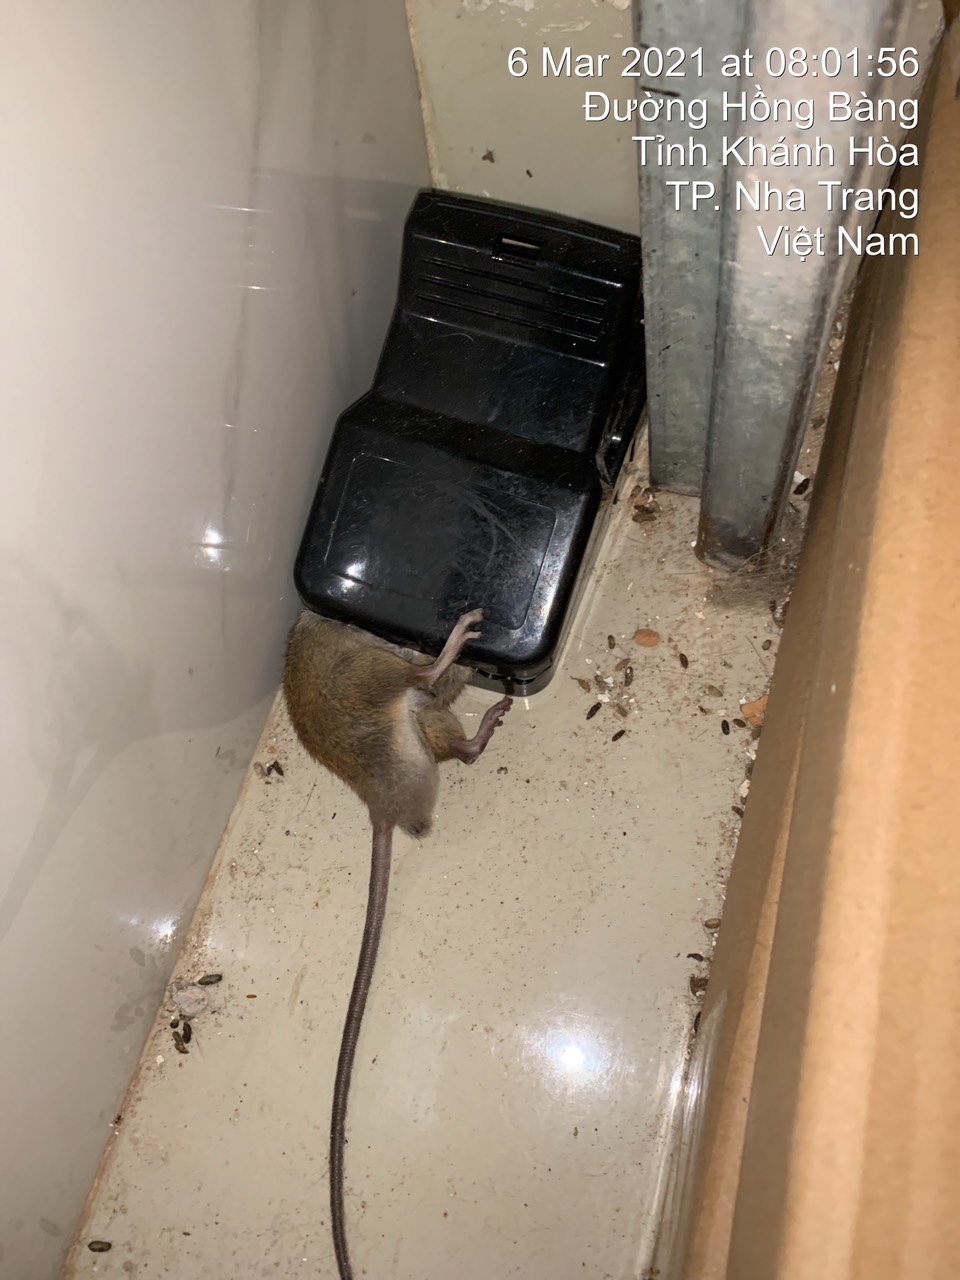 Dịch vụ diệt chuột